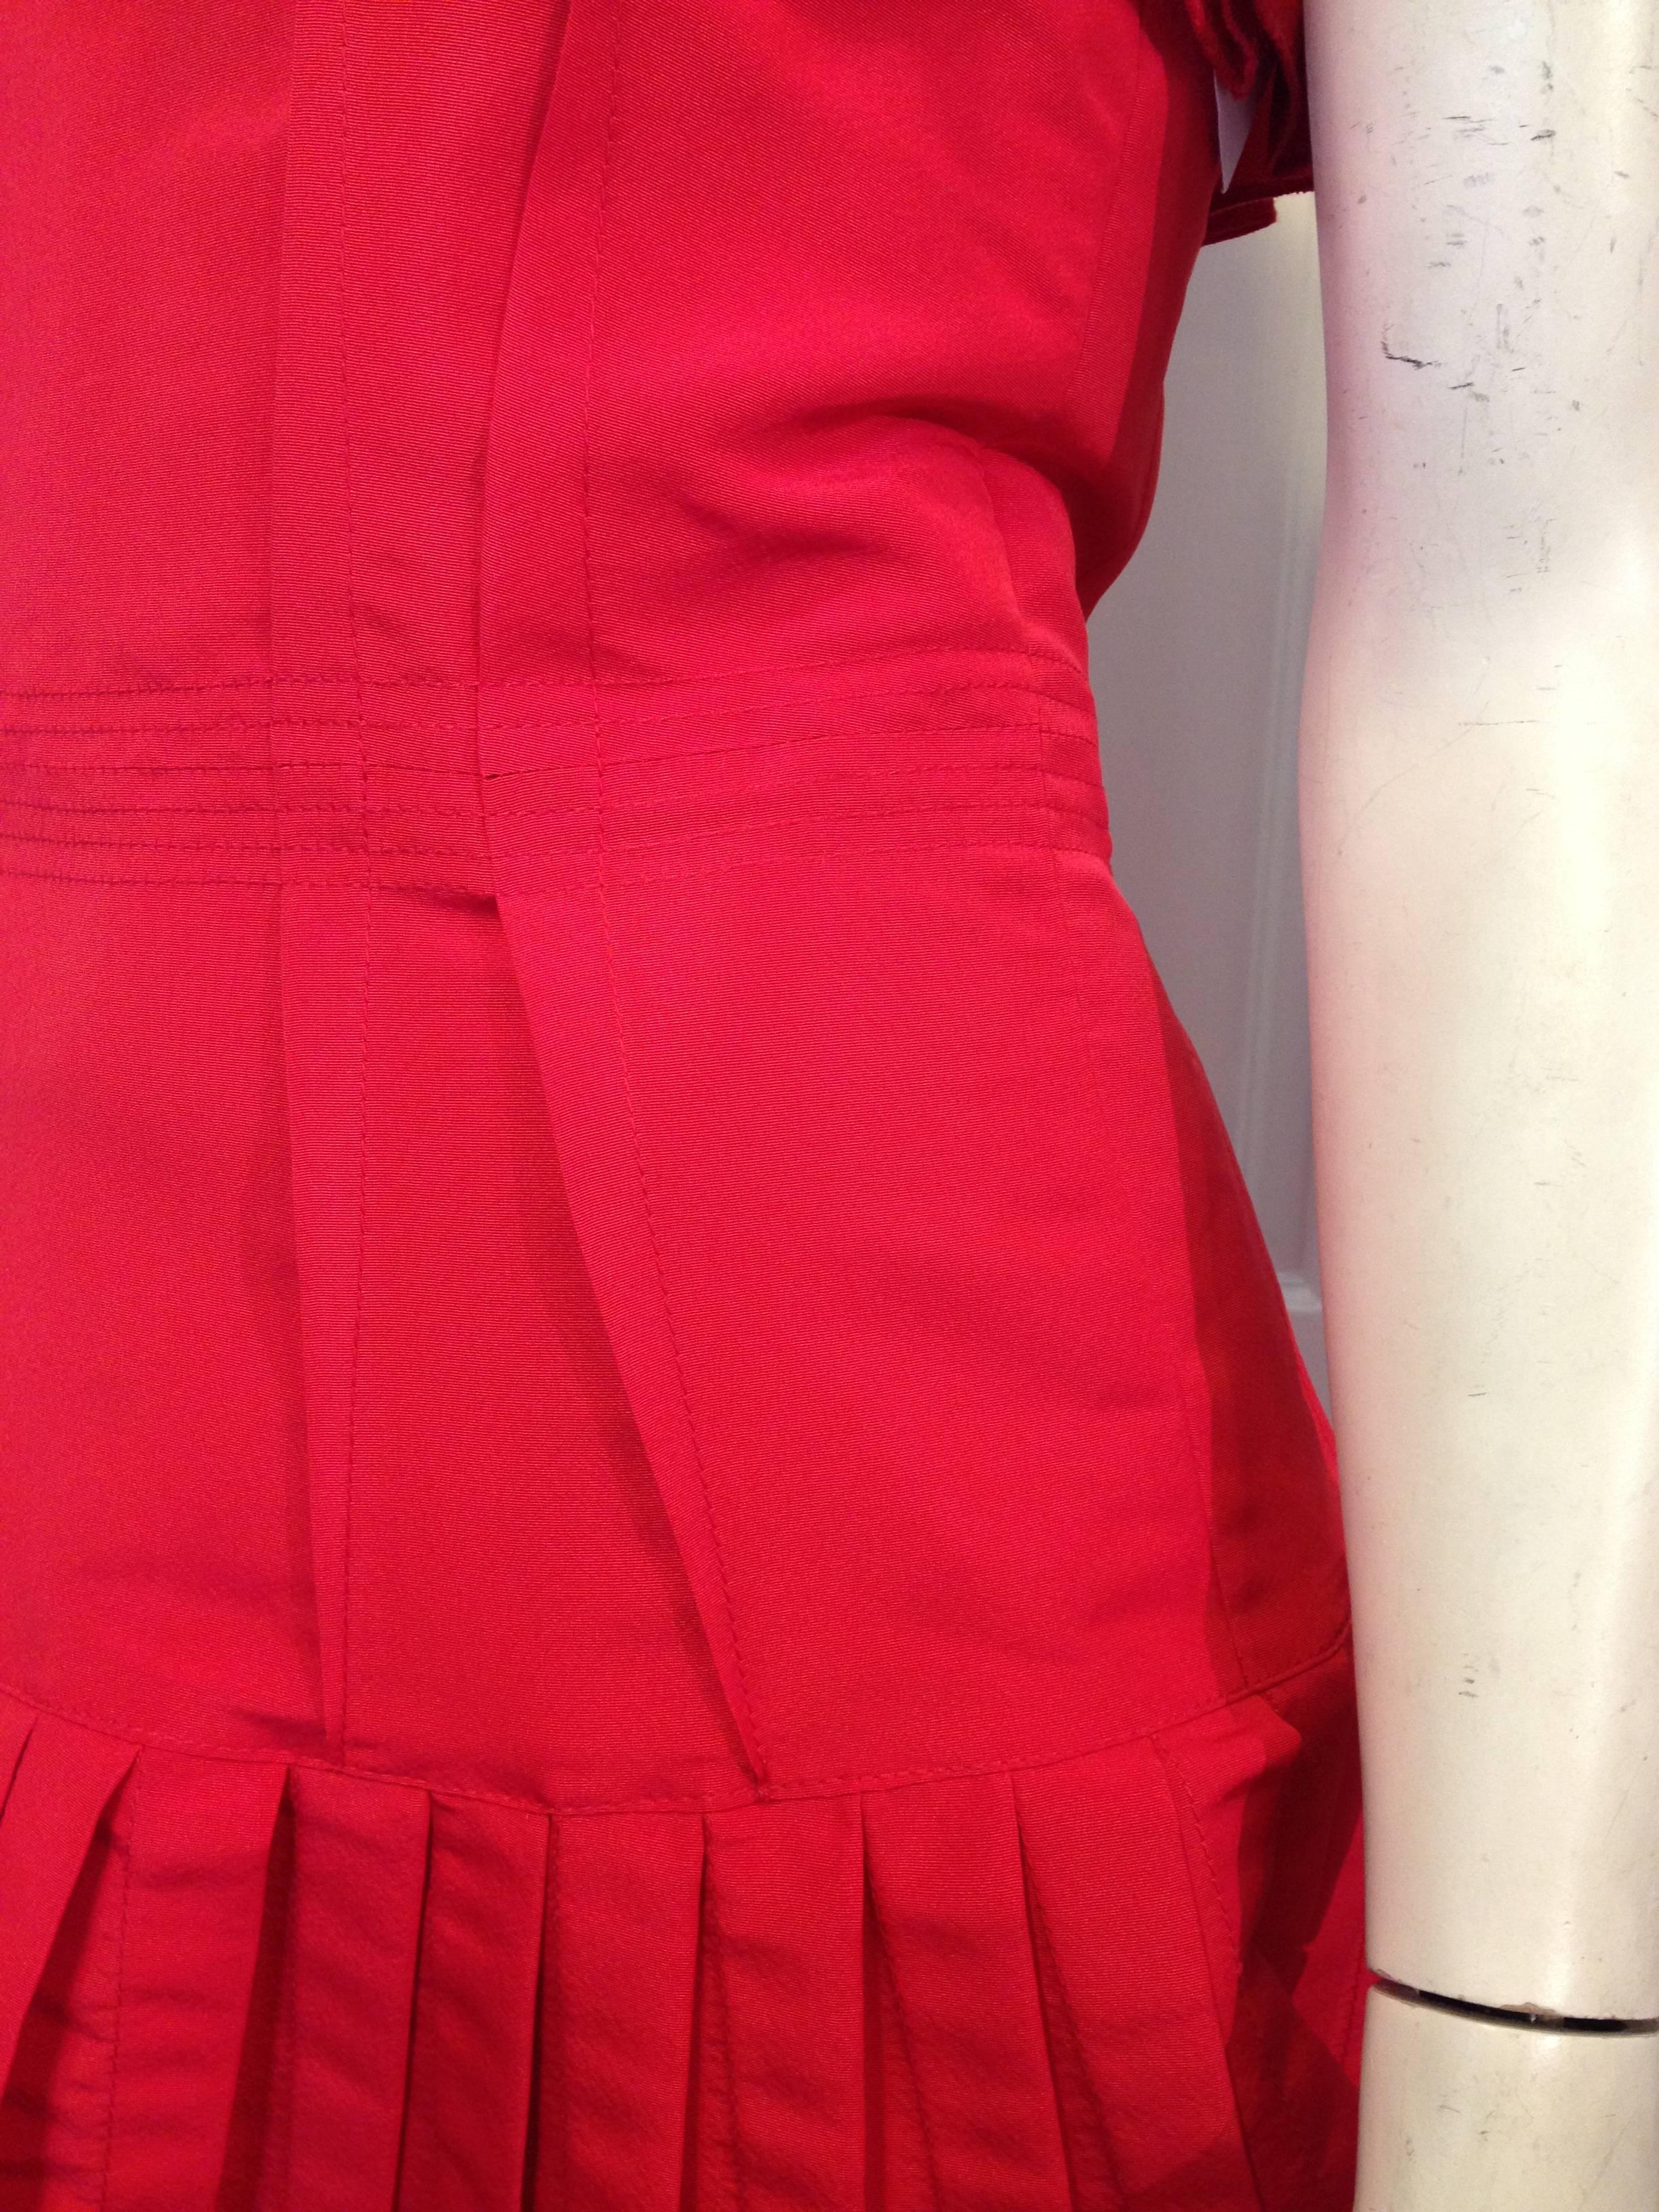 Oscar de la Renta Red Silk Dress with Ruffles For Sale 4